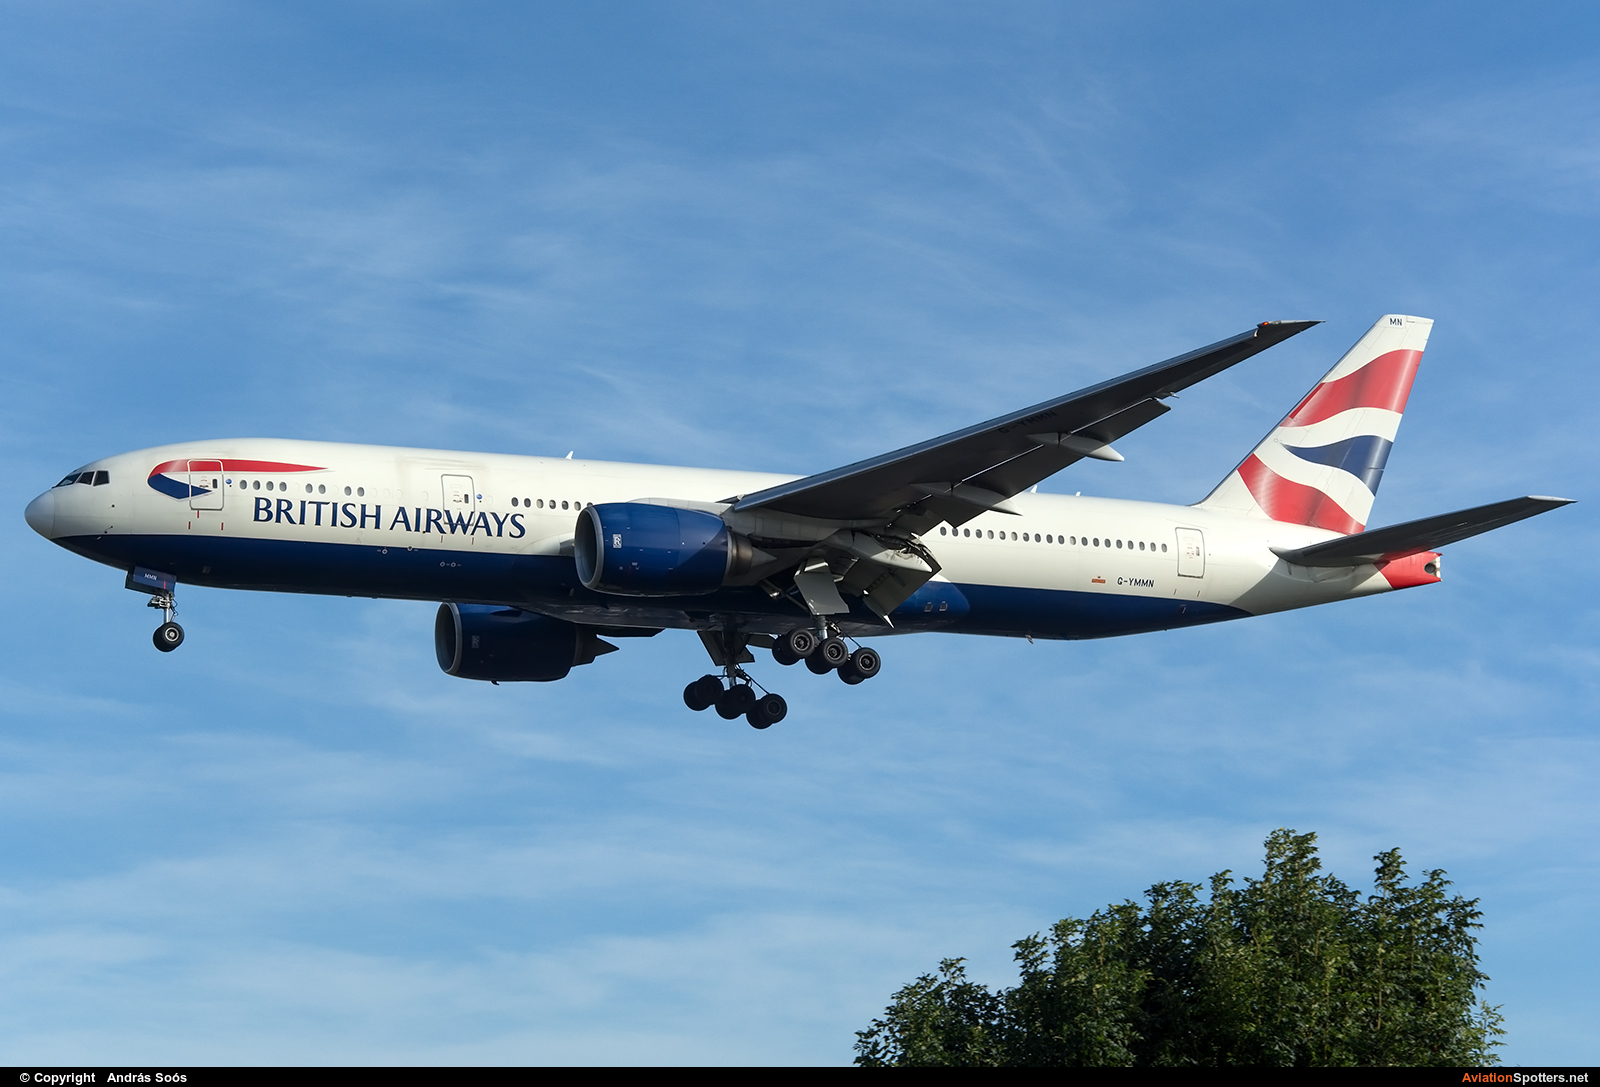 British Airways  -  777-200ER  (G-YMMN) By András Soós (sas1965)